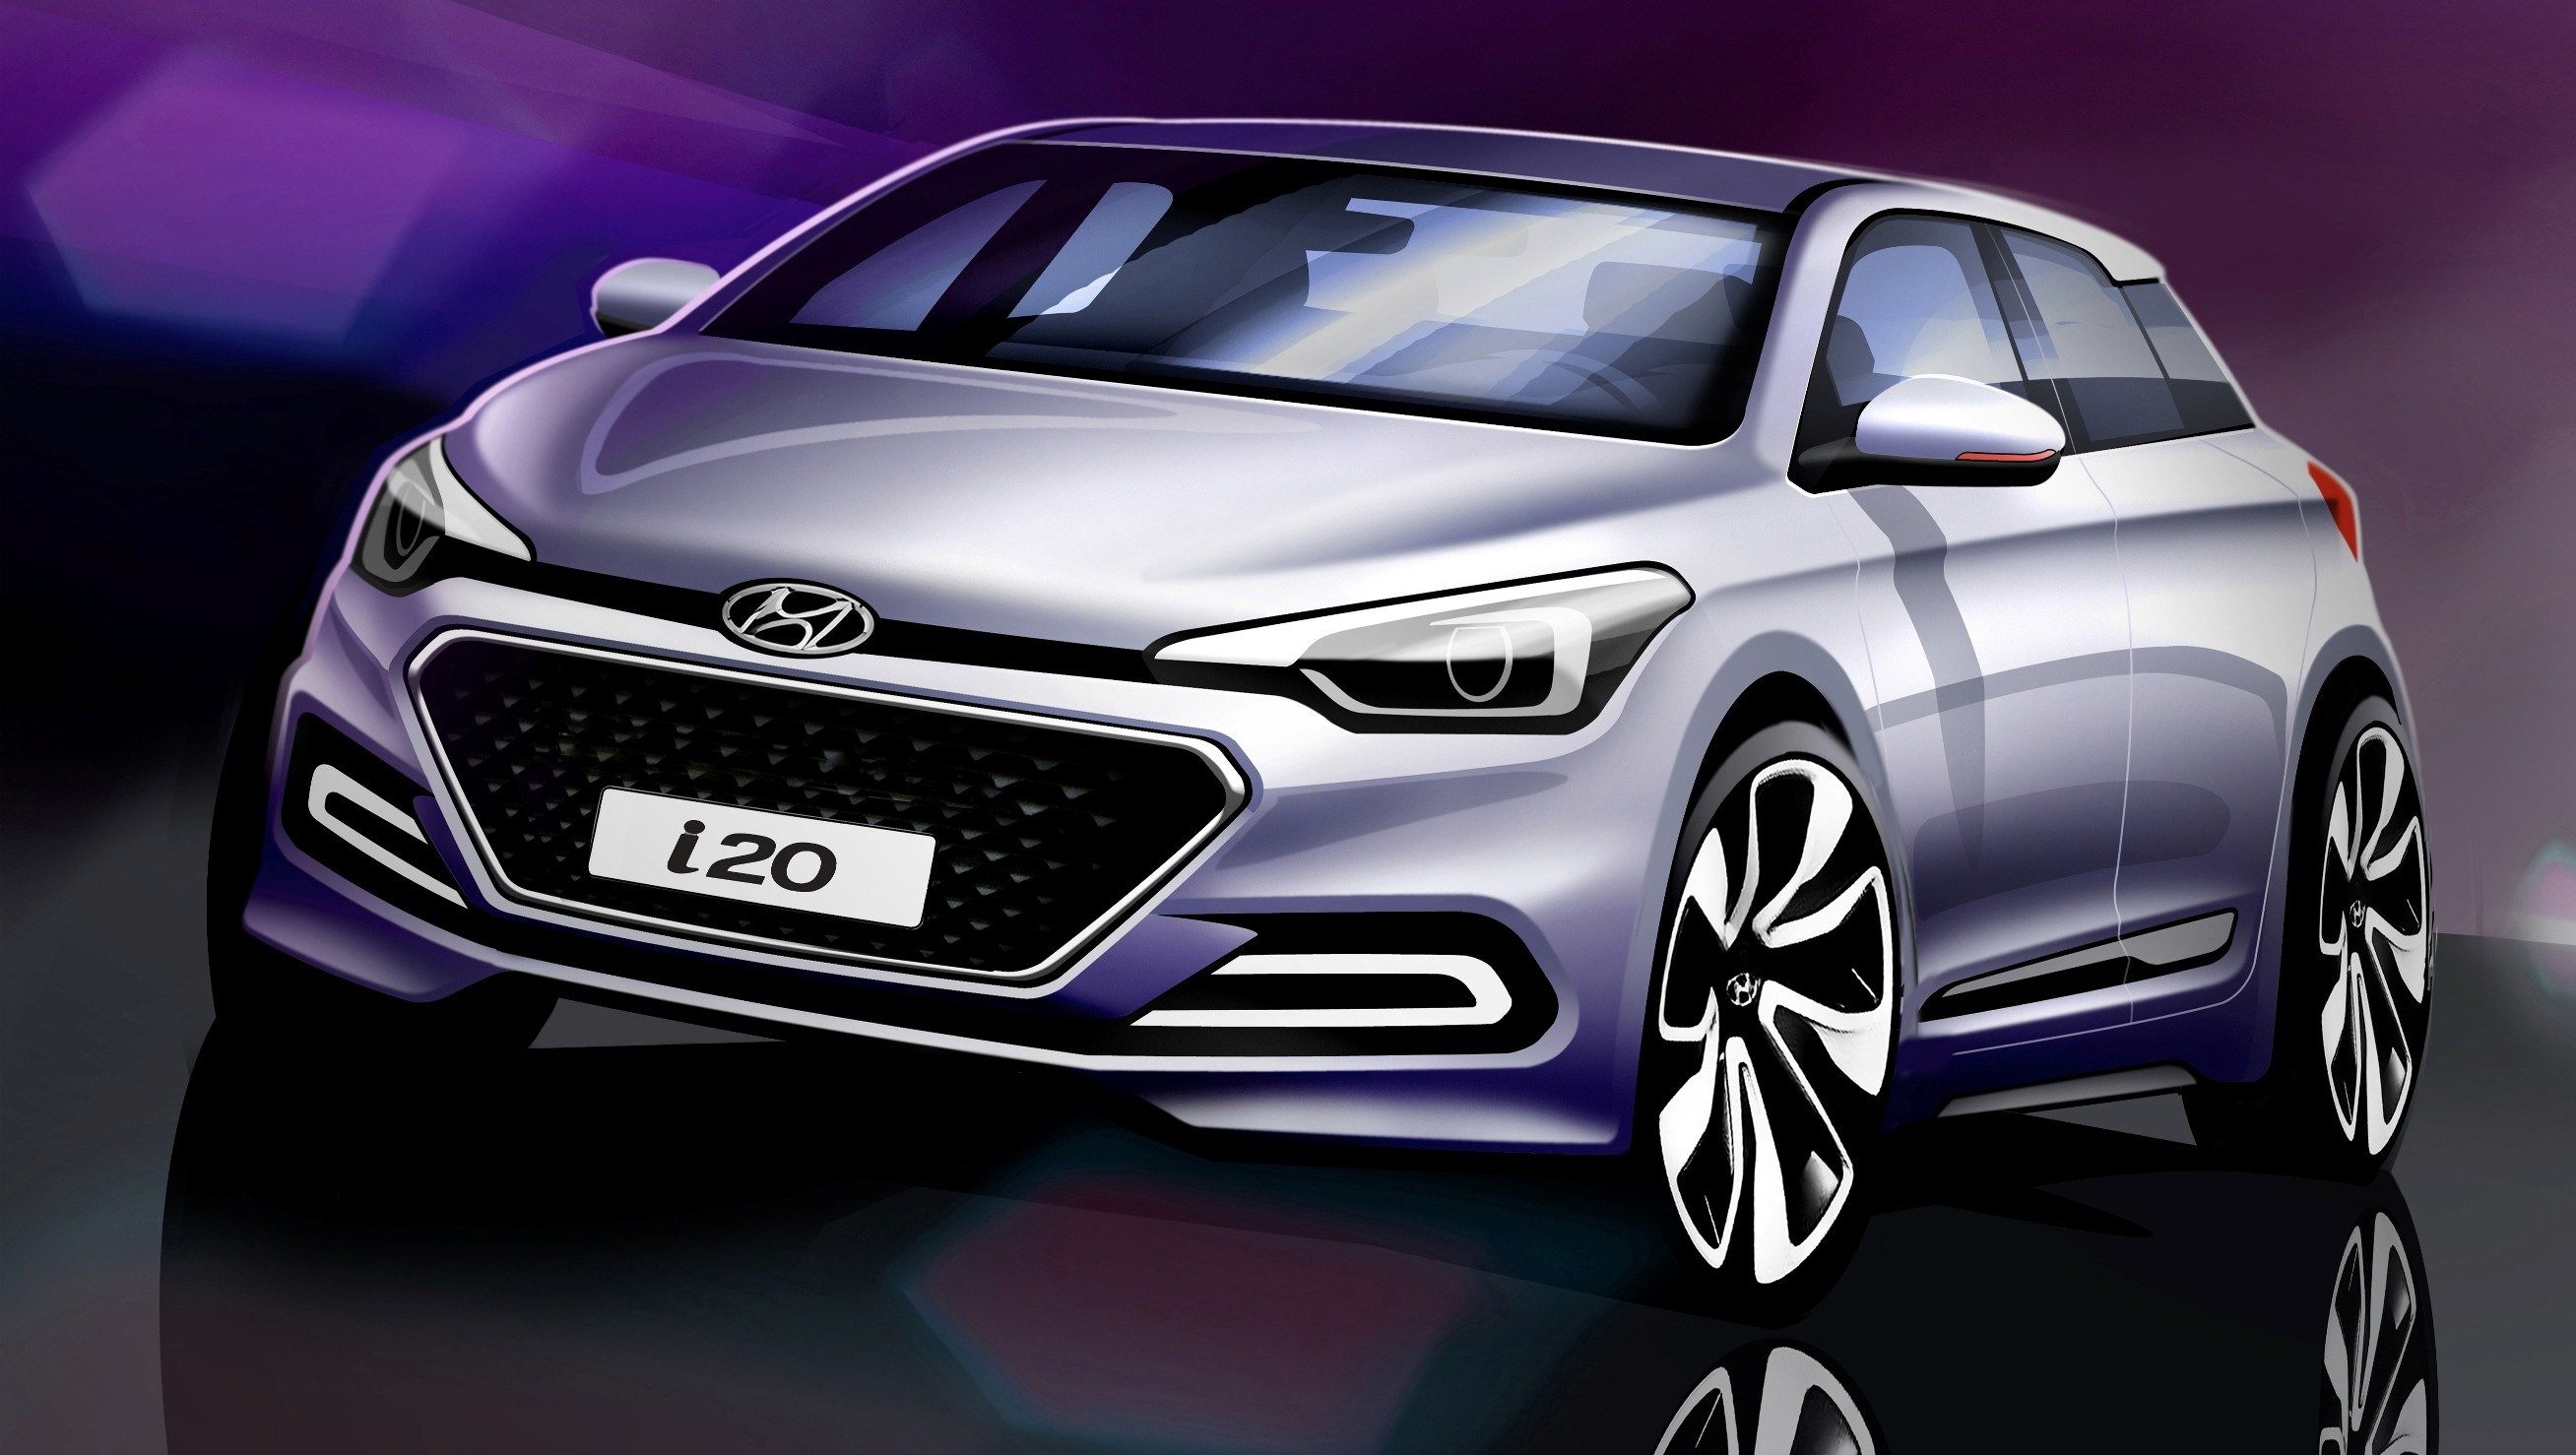 Hyundai i20 thế hệ mới sẽ về Việt Nam trong năm 2015?